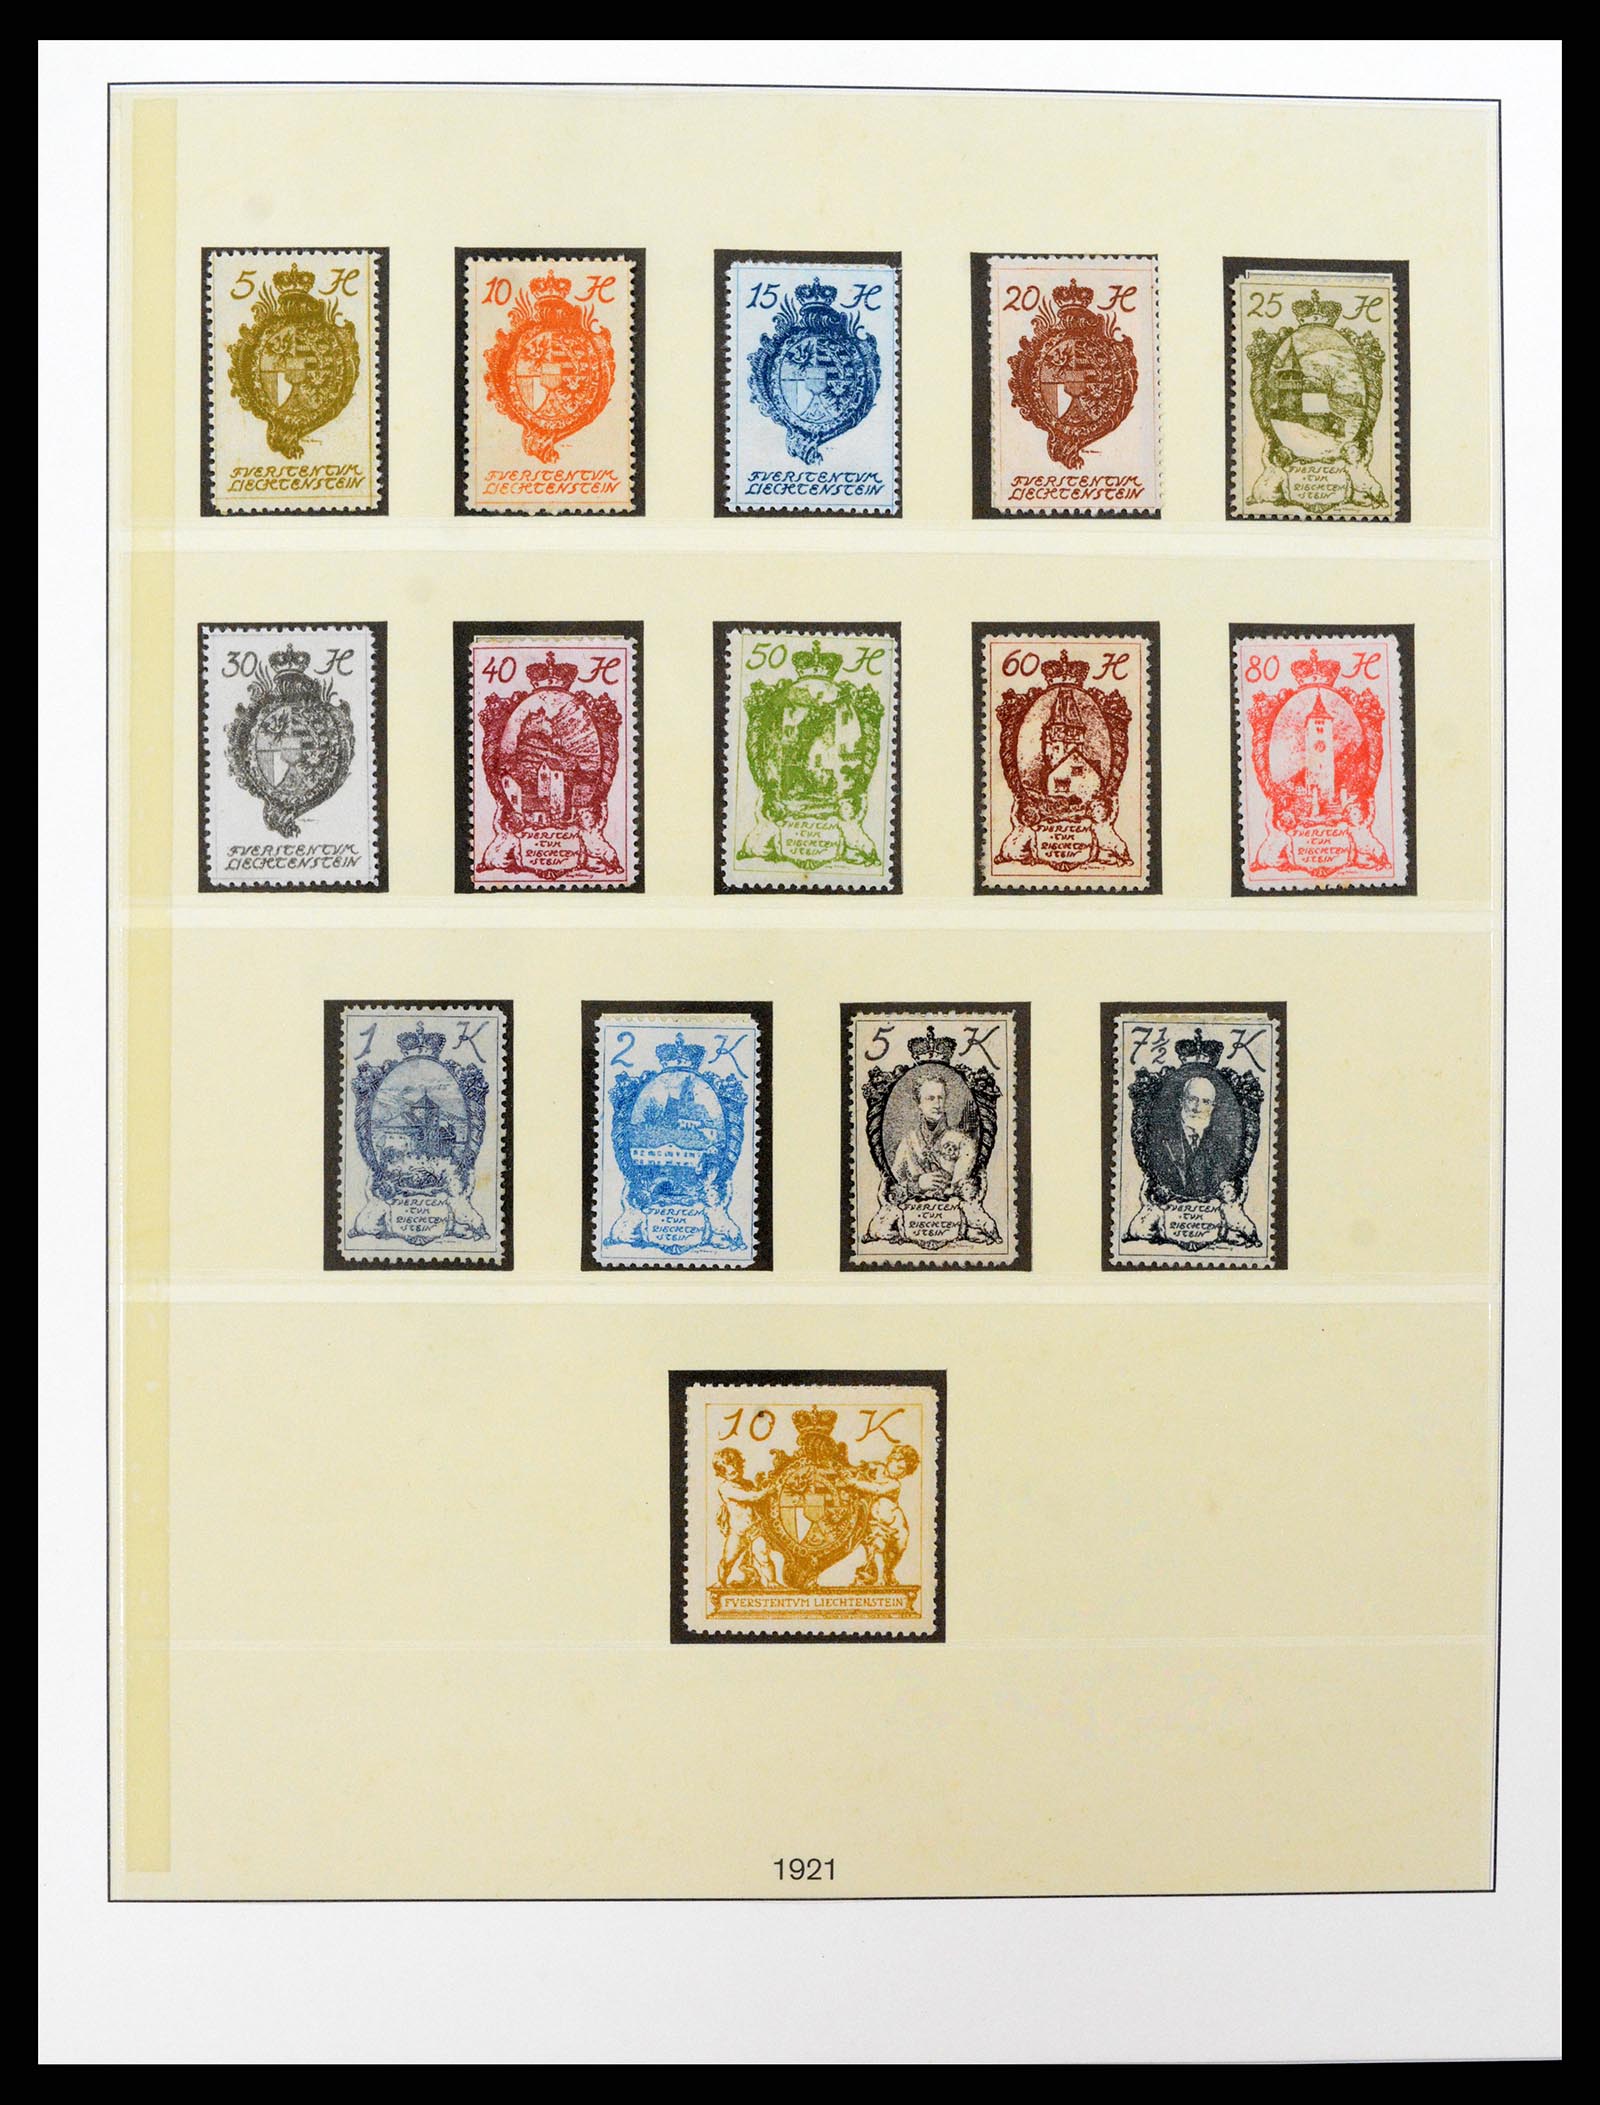 37293 004 - Stamp collection 37293 Liechtenstein 1912-2003.